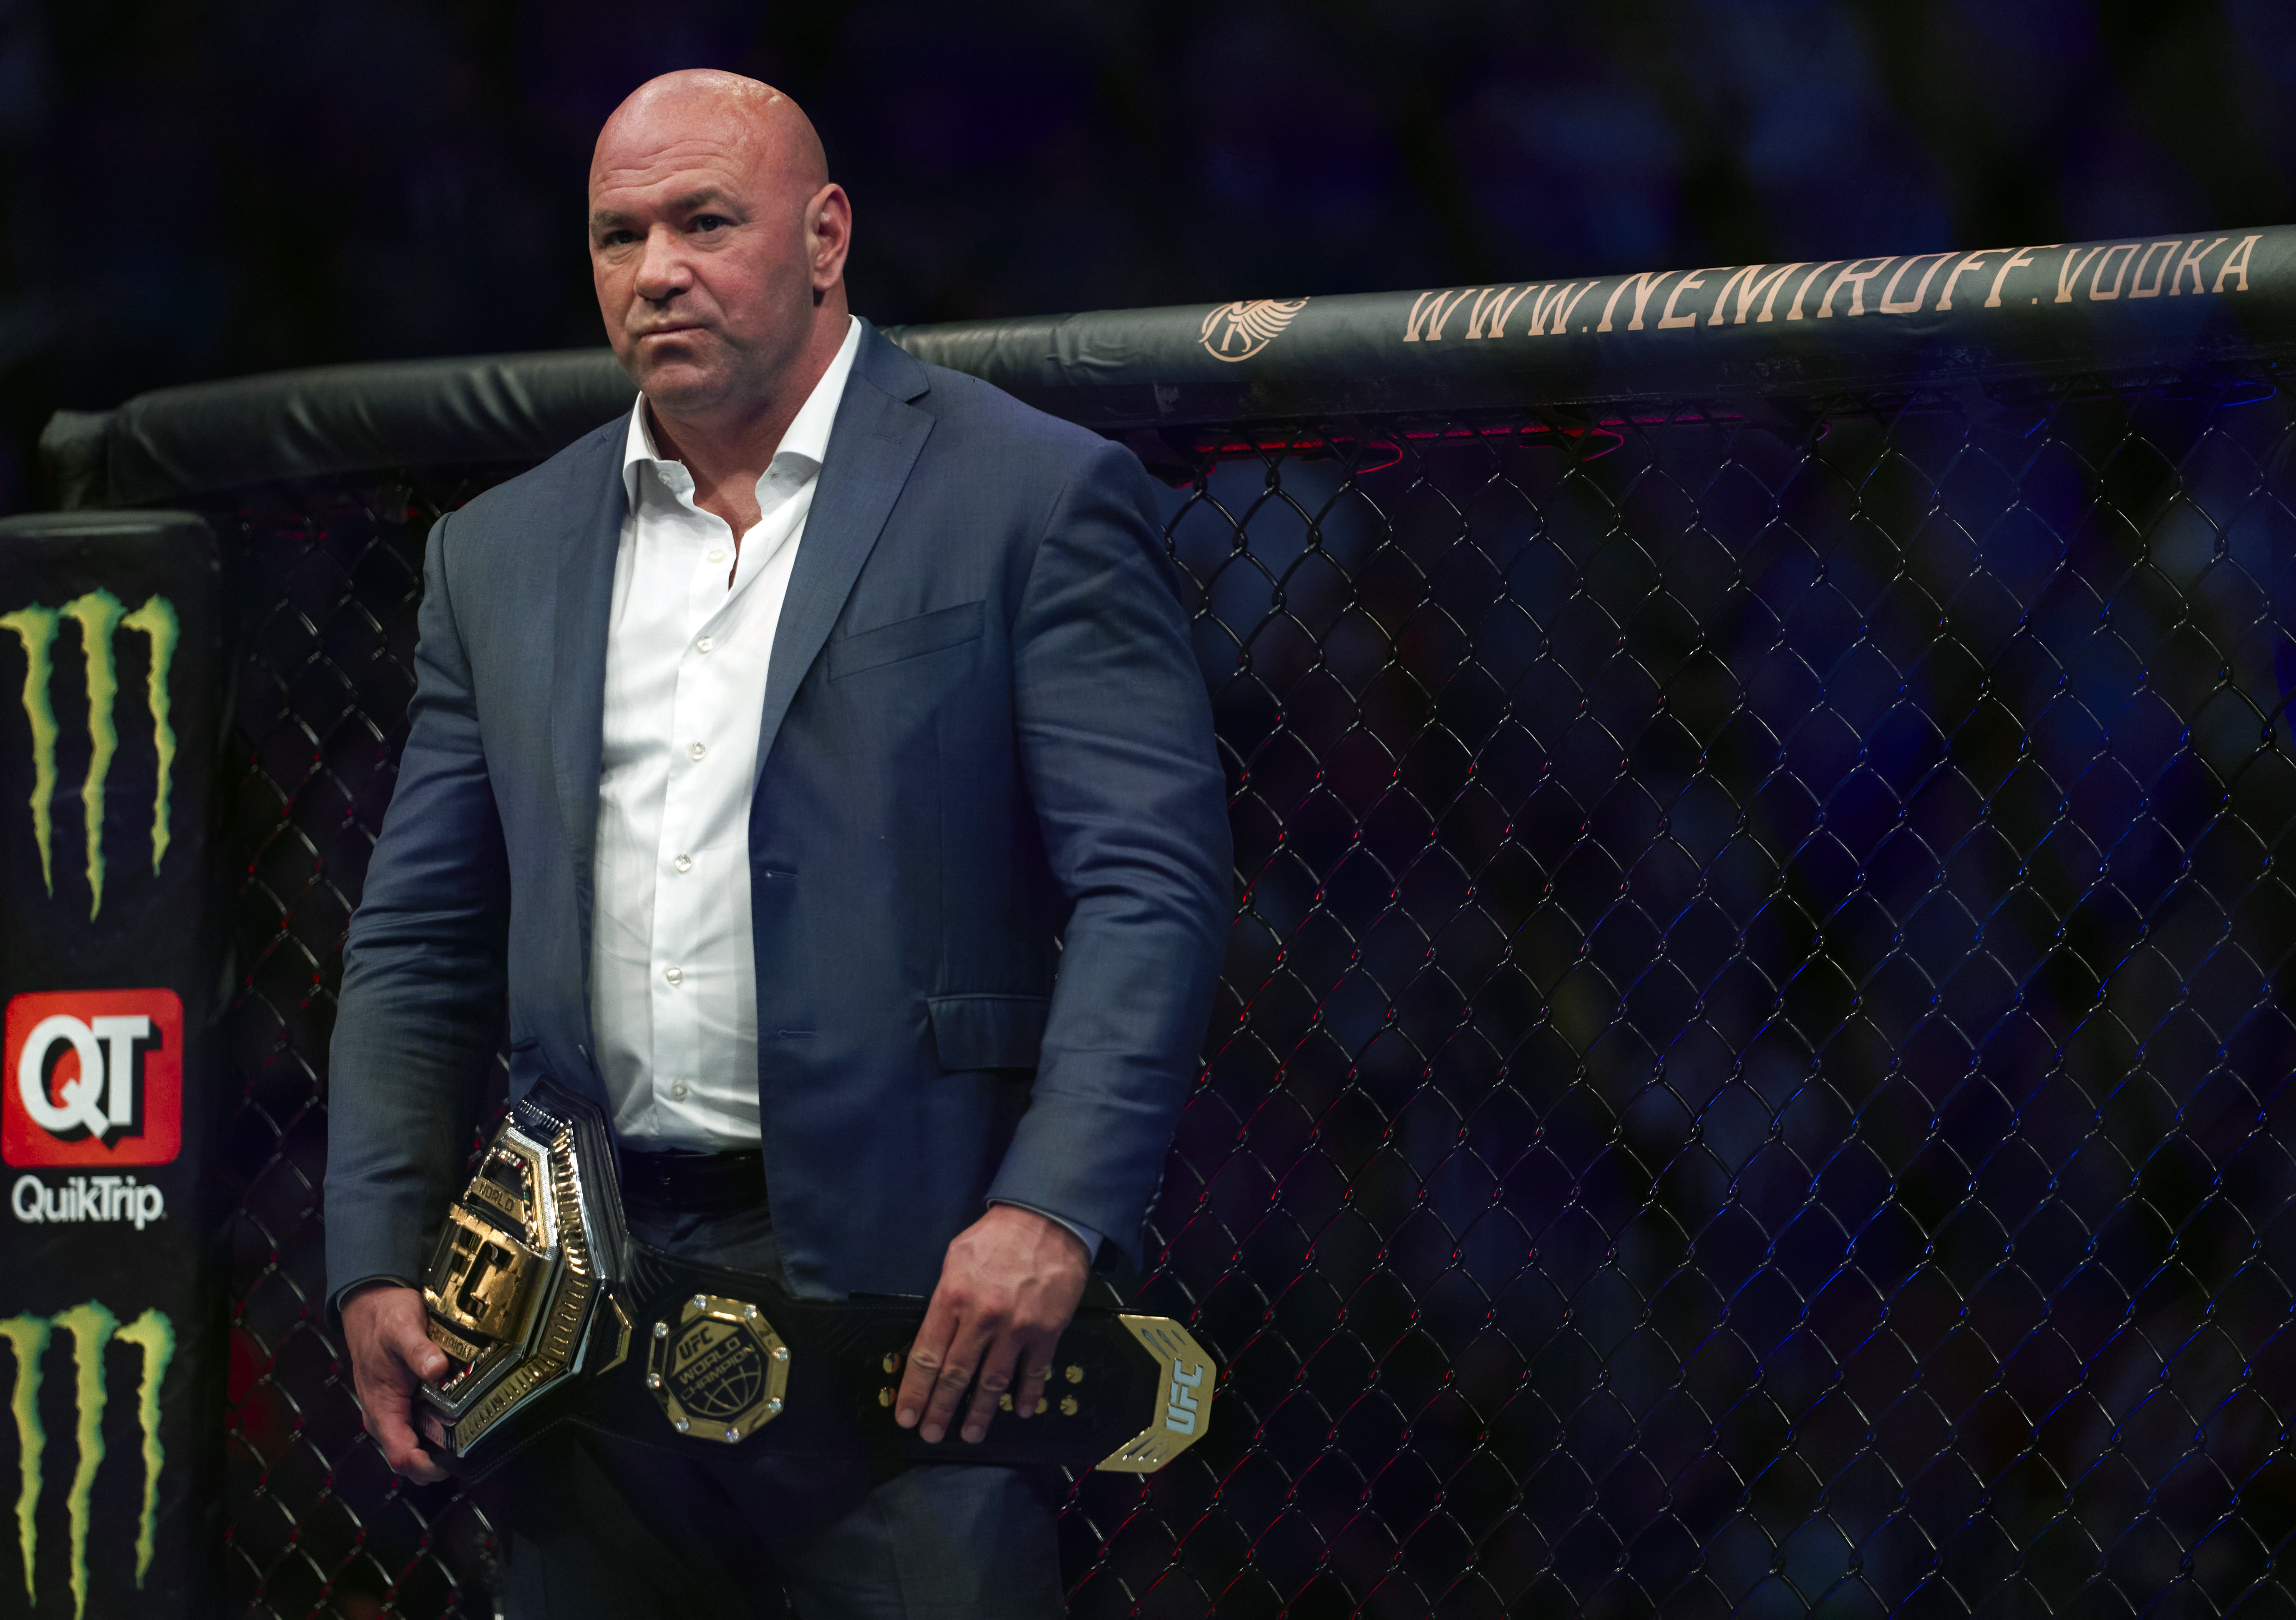 UFC-Präsident Dana White hat Volkanovski und Usman für ihr kurzfristiges Engagement gelobt